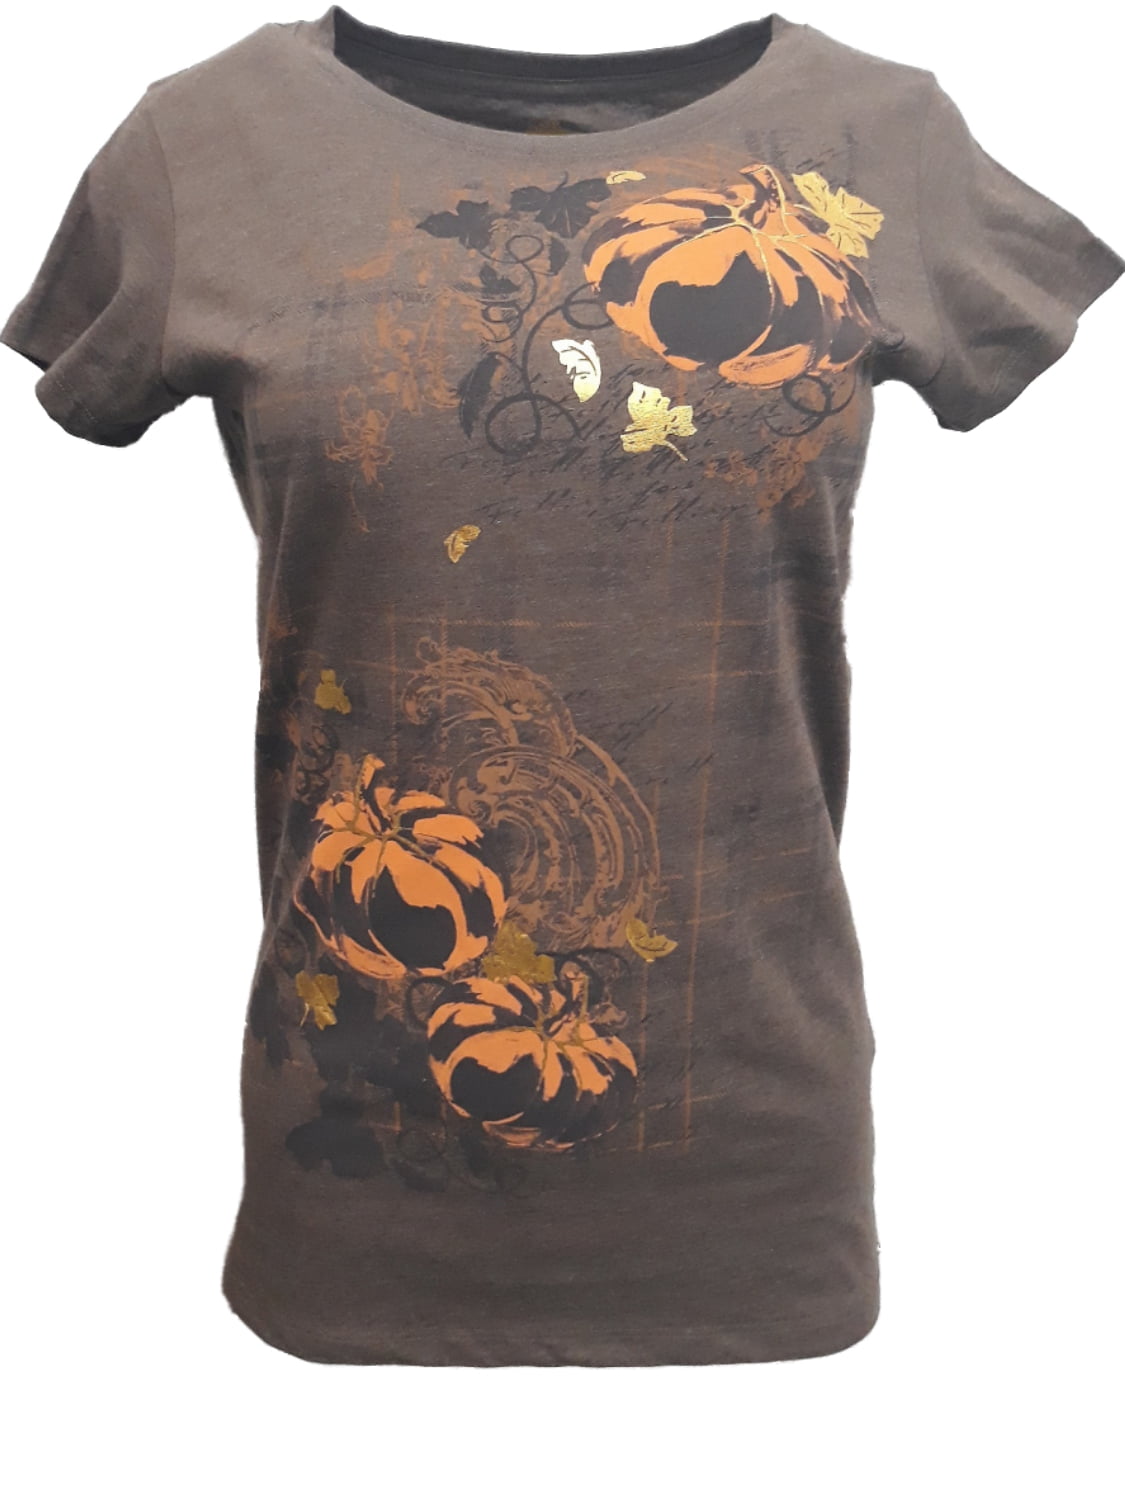 Fall Mama Shirt Vinyl Shirts for Fall Floral Llama Shirt for Women Autumn Shirts Vintage Llama Gifts for Women Llama Face Shirt